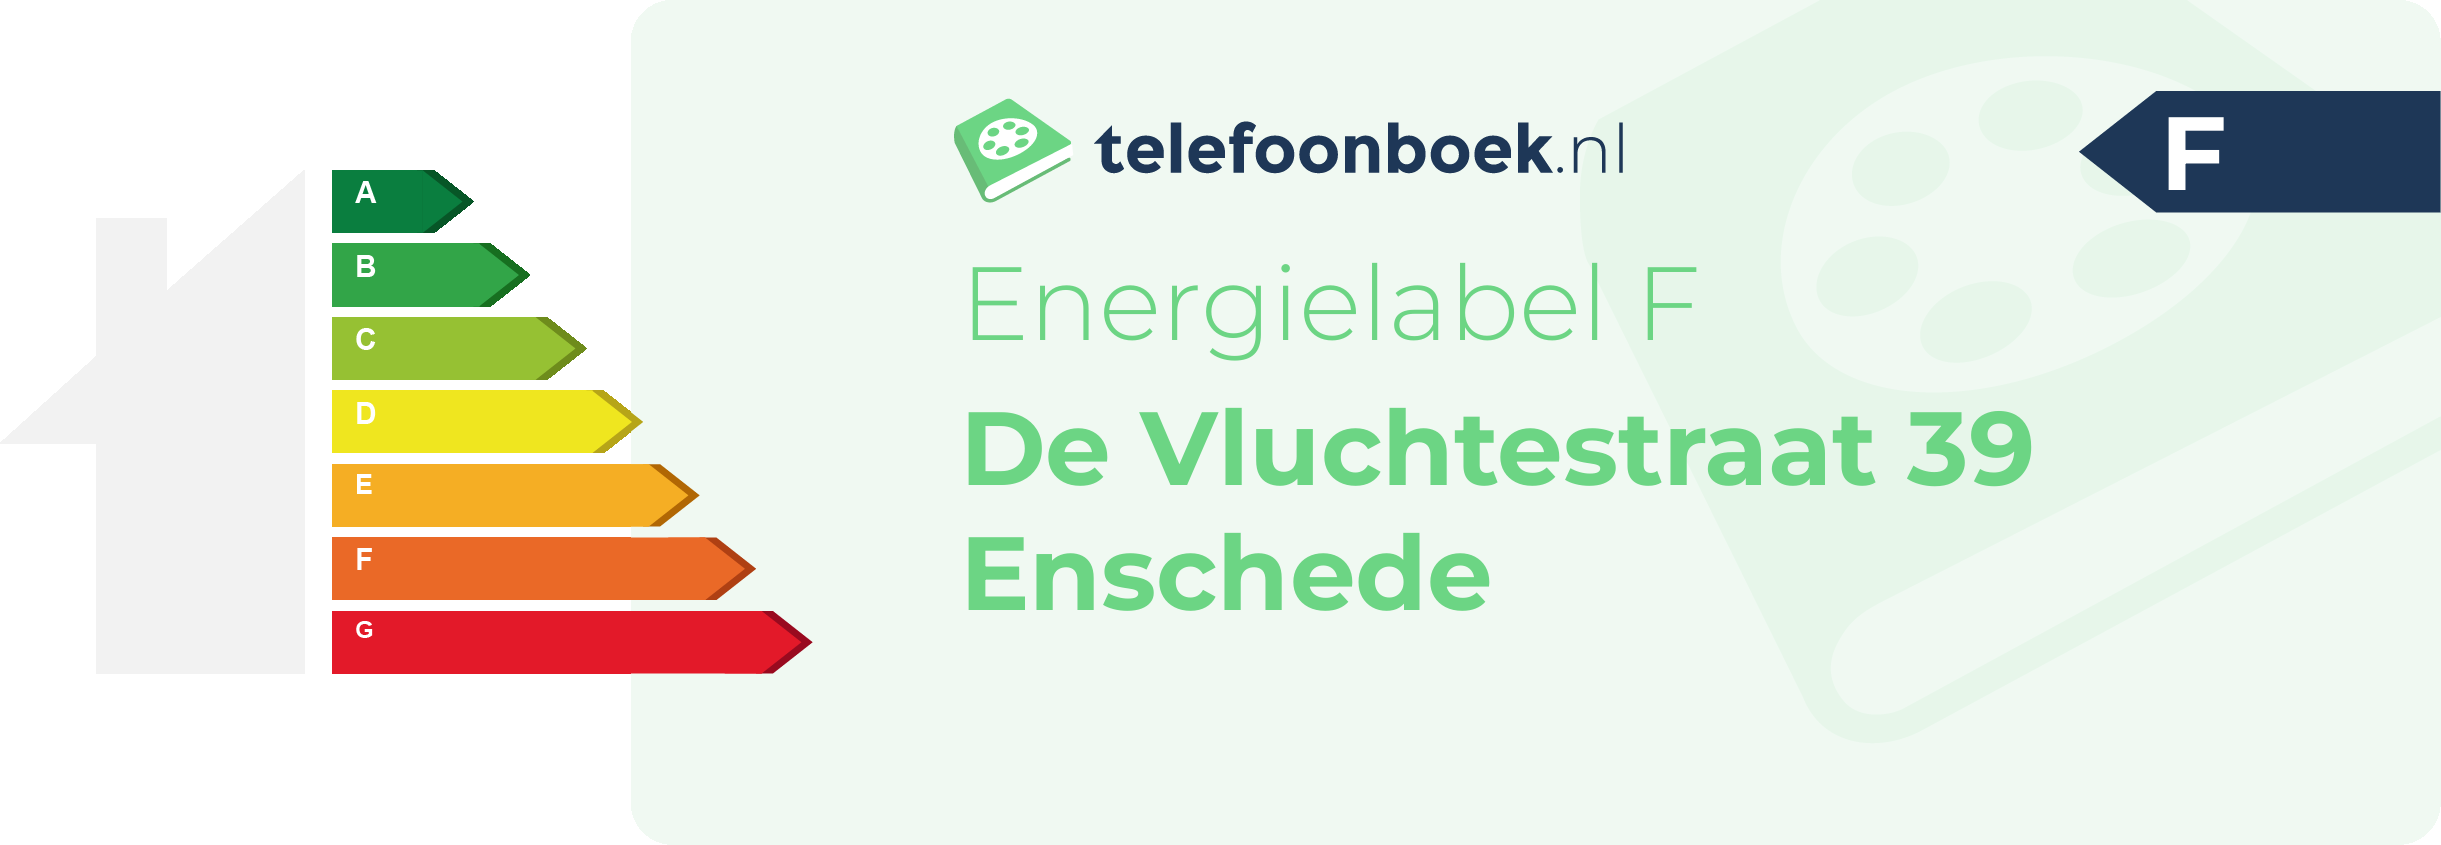 Energielabel De Vluchtestraat 39 Enschede